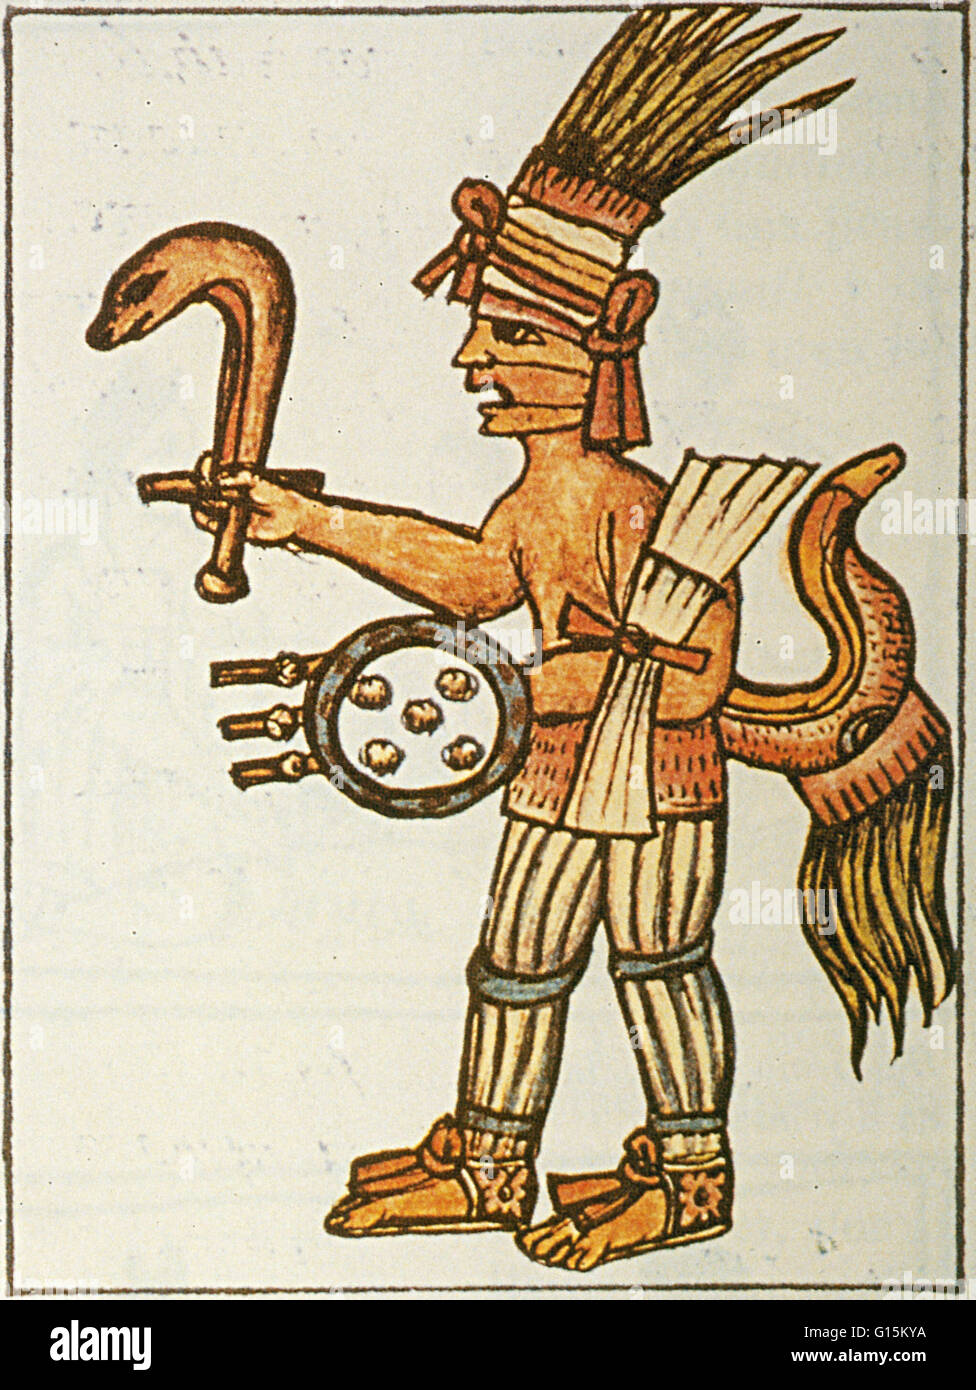 Huitzilopochtli con serpiente de fuego, desde el Códice Florentino. En la religión azteca, Huitzilopochtli era el dios de la guerra, el sol, el sacrificio humano y la patrona de la ciudad de Tenochtitlan. Él era también el Dios nacional de los mexicas de Tenochtitlan. Huitzilopochtl Foto de stock